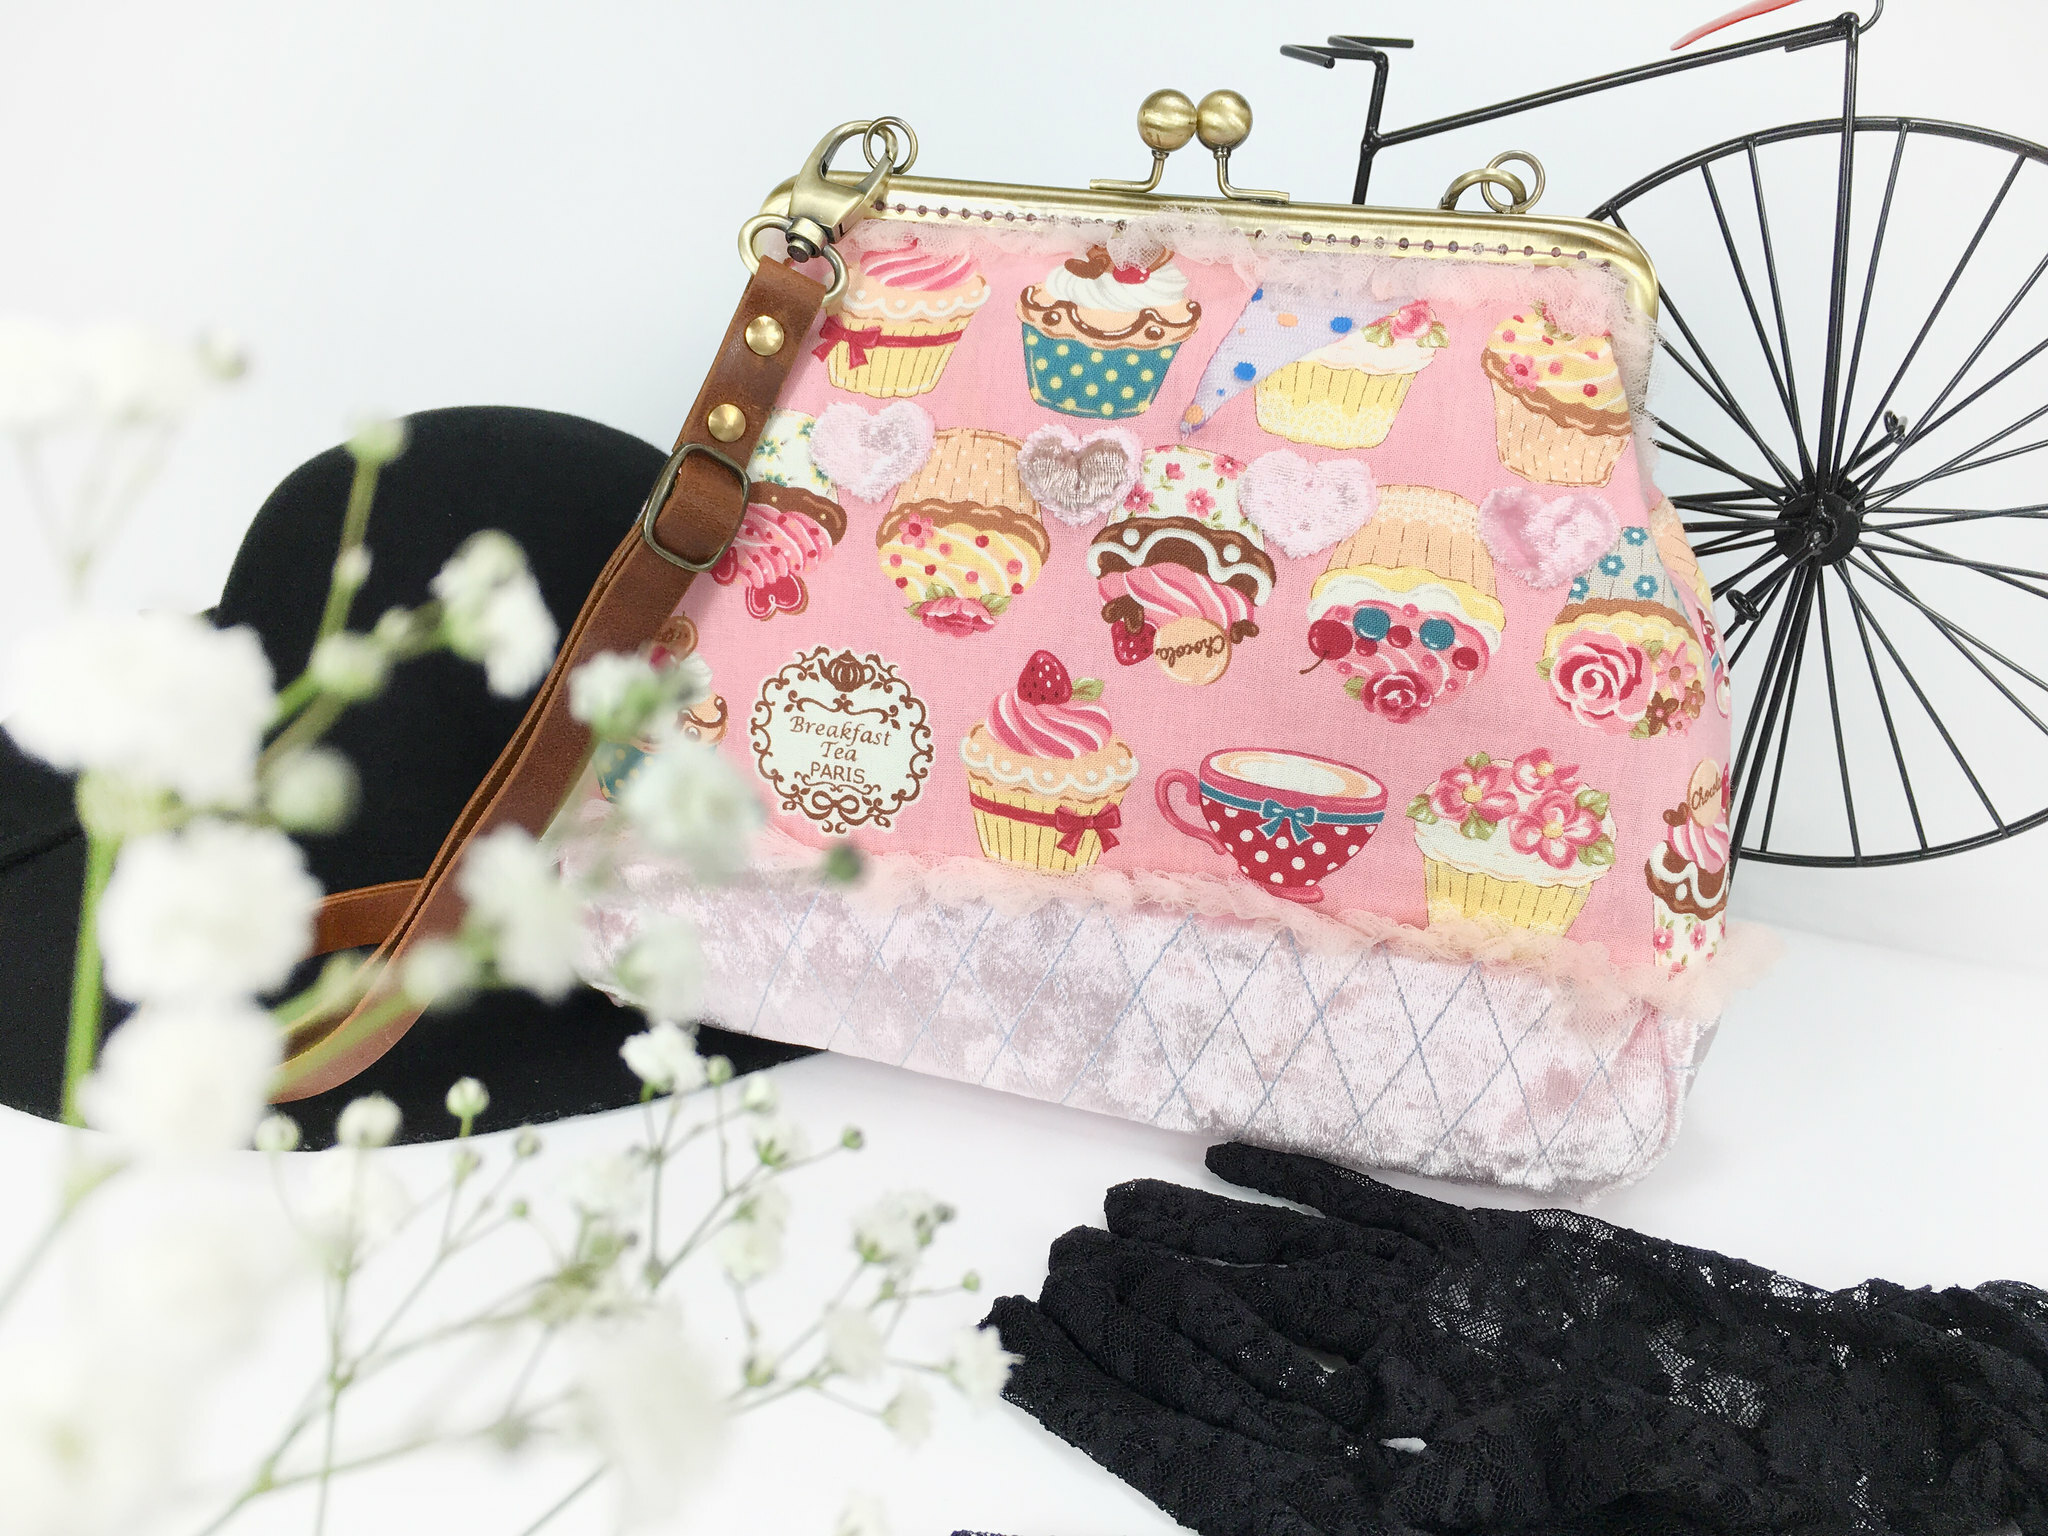 風后妃設計口金包pink fashion kiss lock bag handmade bag